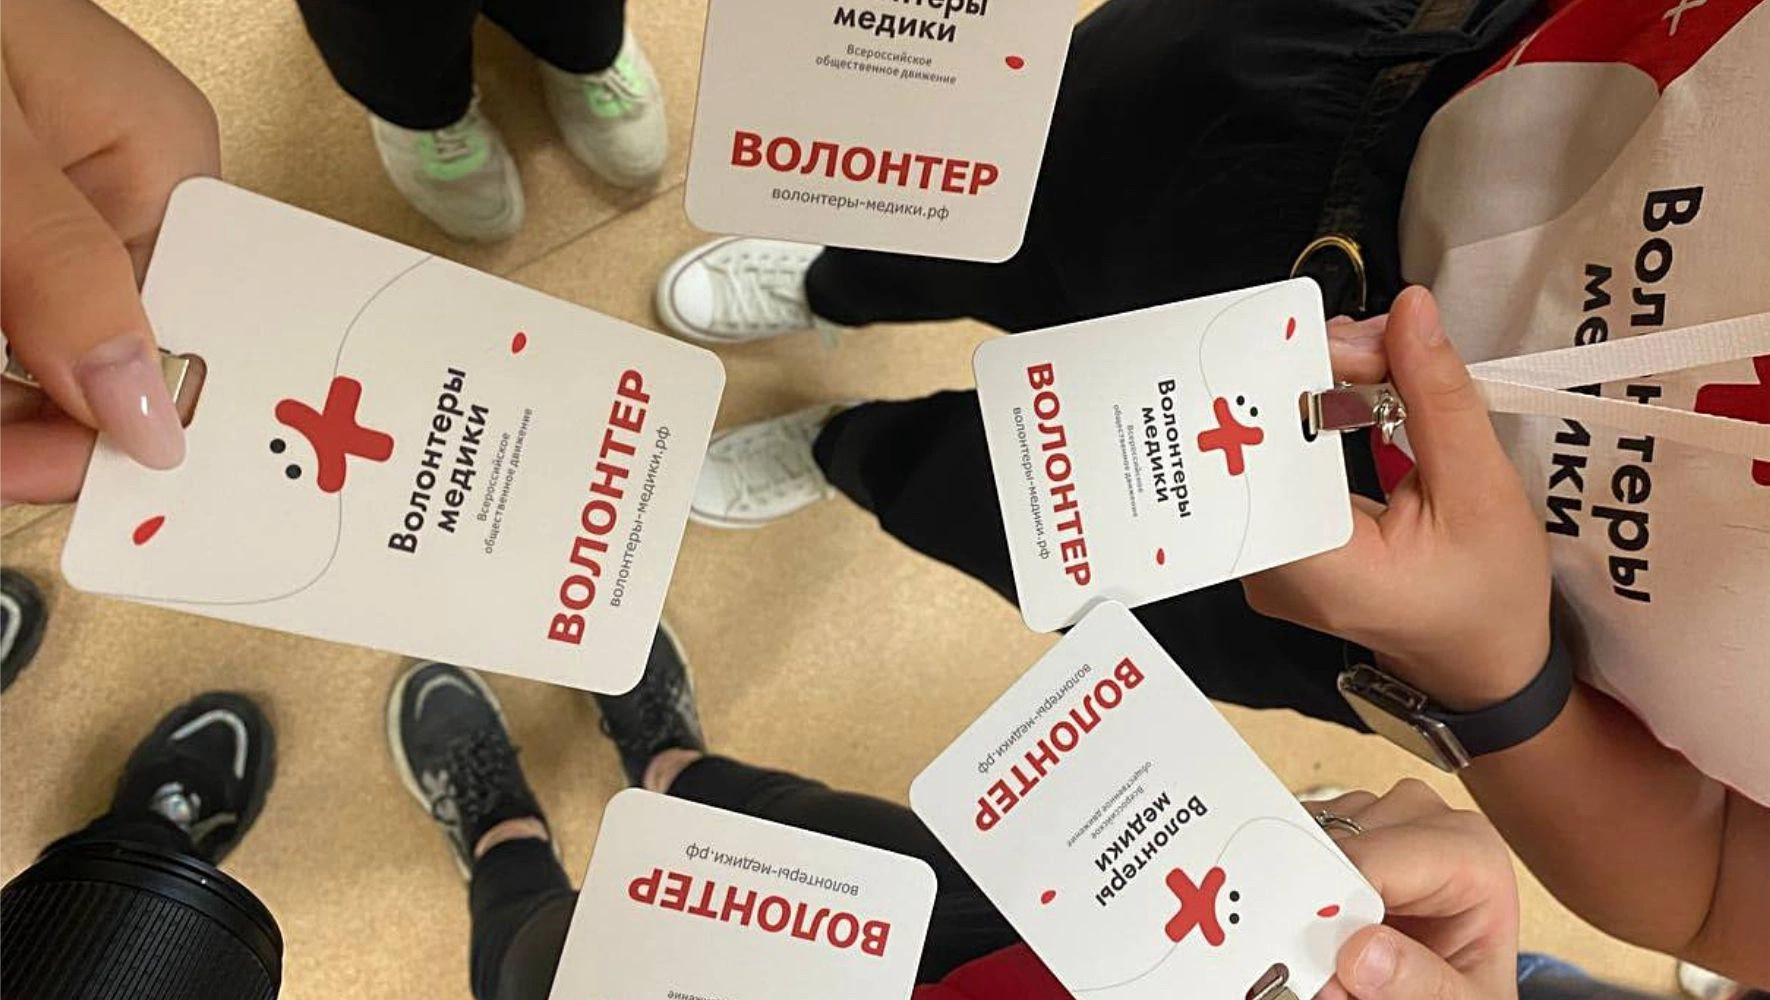 На Ямале утвердили награду для волонтёров, в городах округа реализуется экологический проект, в Салехарде откроют школу резьбы по кости